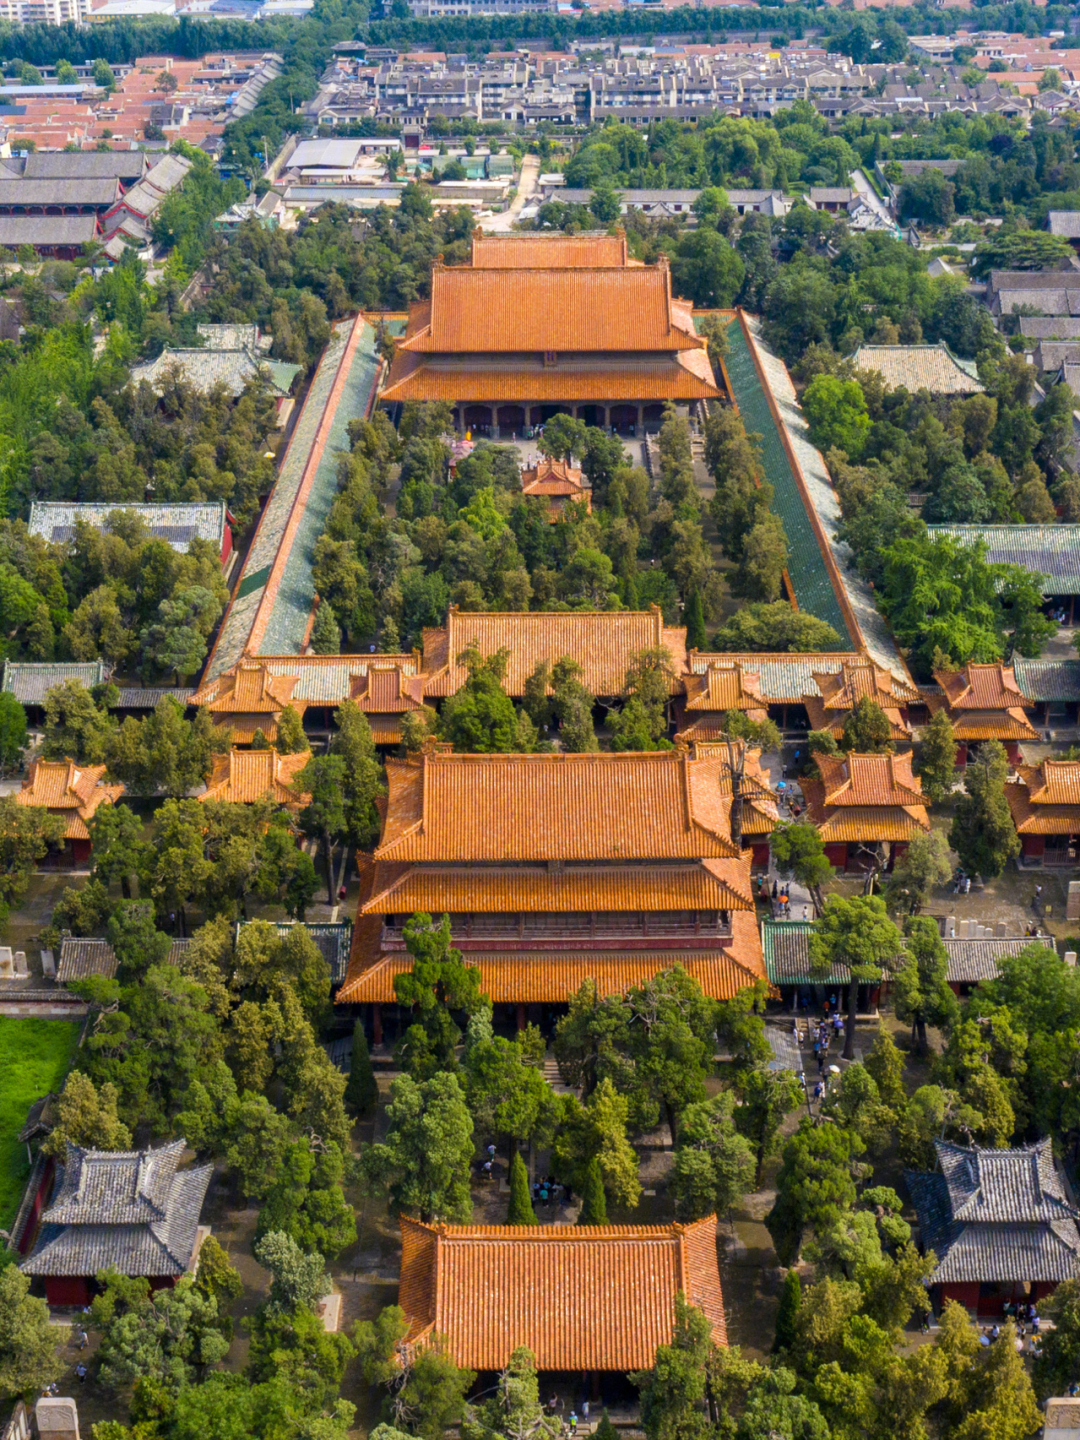 中国四大古建筑群图片